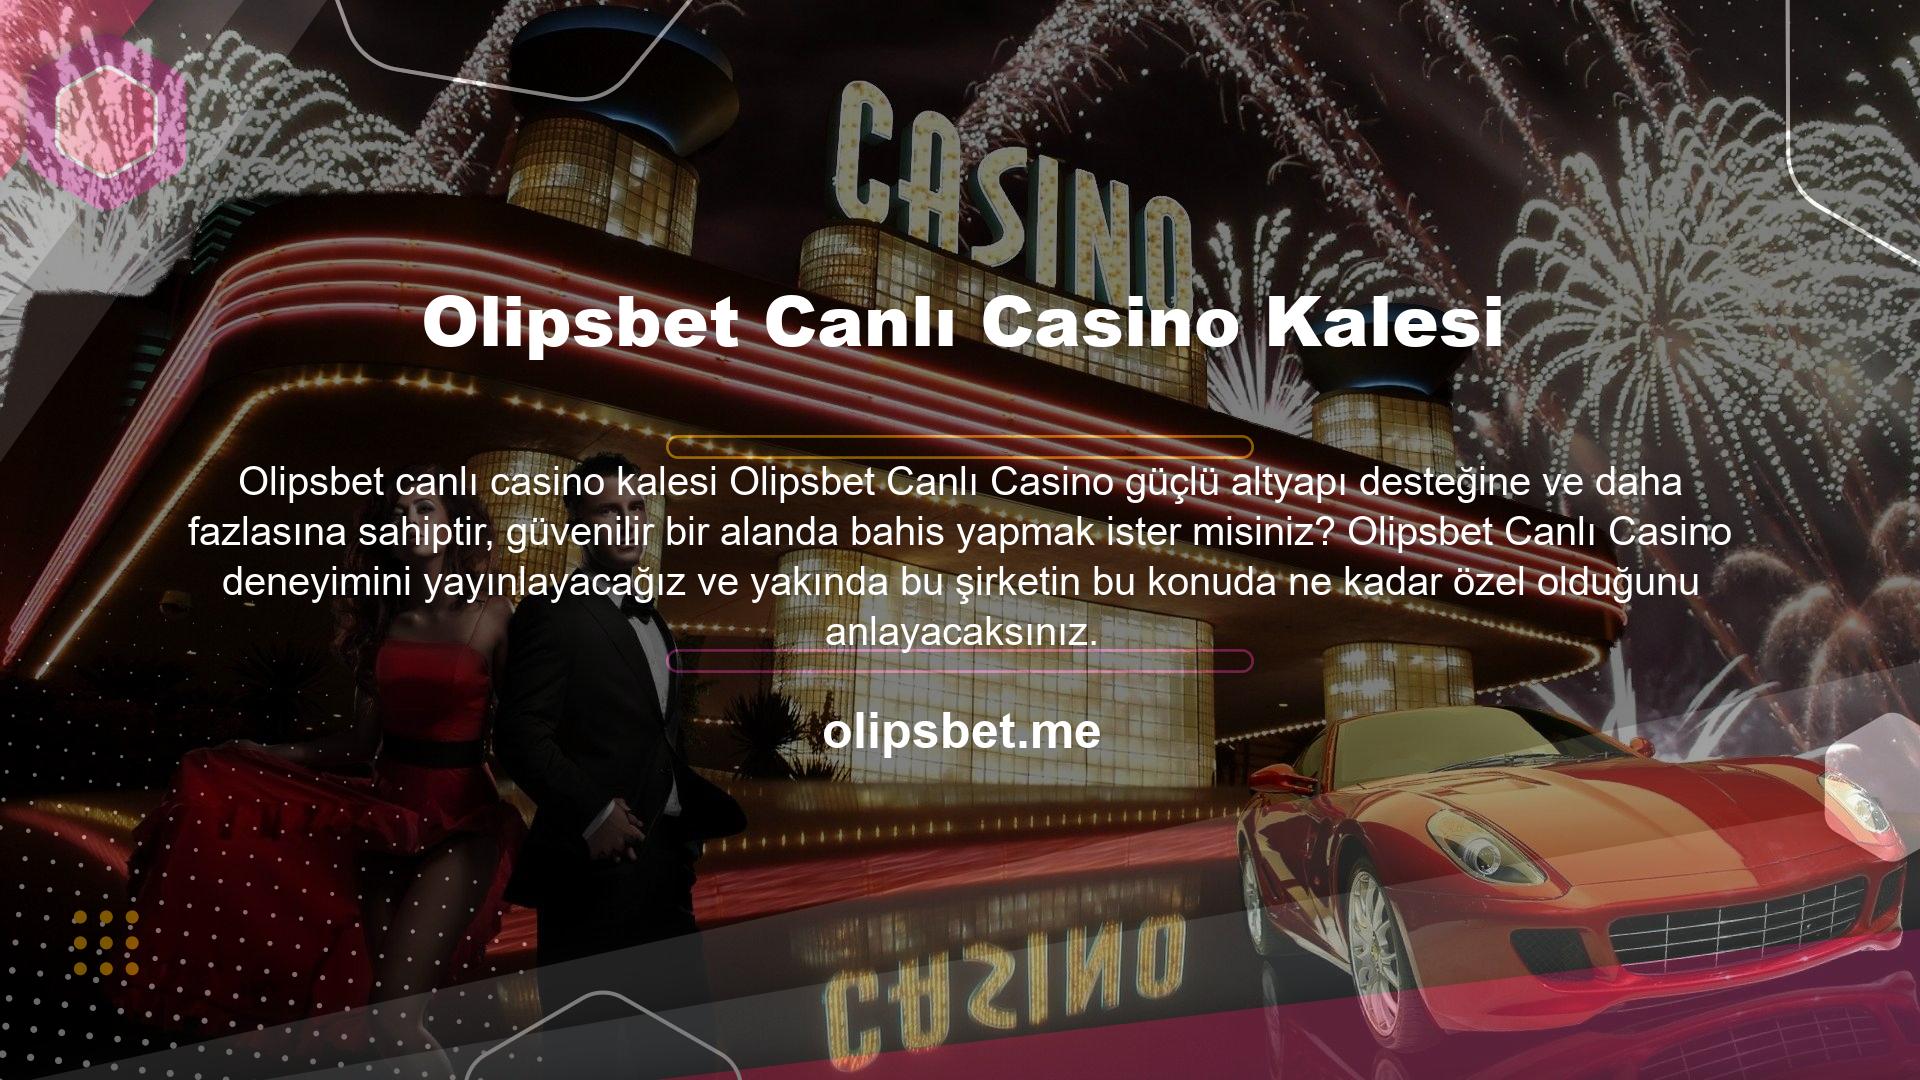 Olipsbet Canlı Casino kategorisi sayesinde gerçek bir casinoda karşılaşacağınız oyunların çoğu ile karşılaşacak ve bunları dijital dünya üzerinden deneyimleme fırsatı bulacaksınız